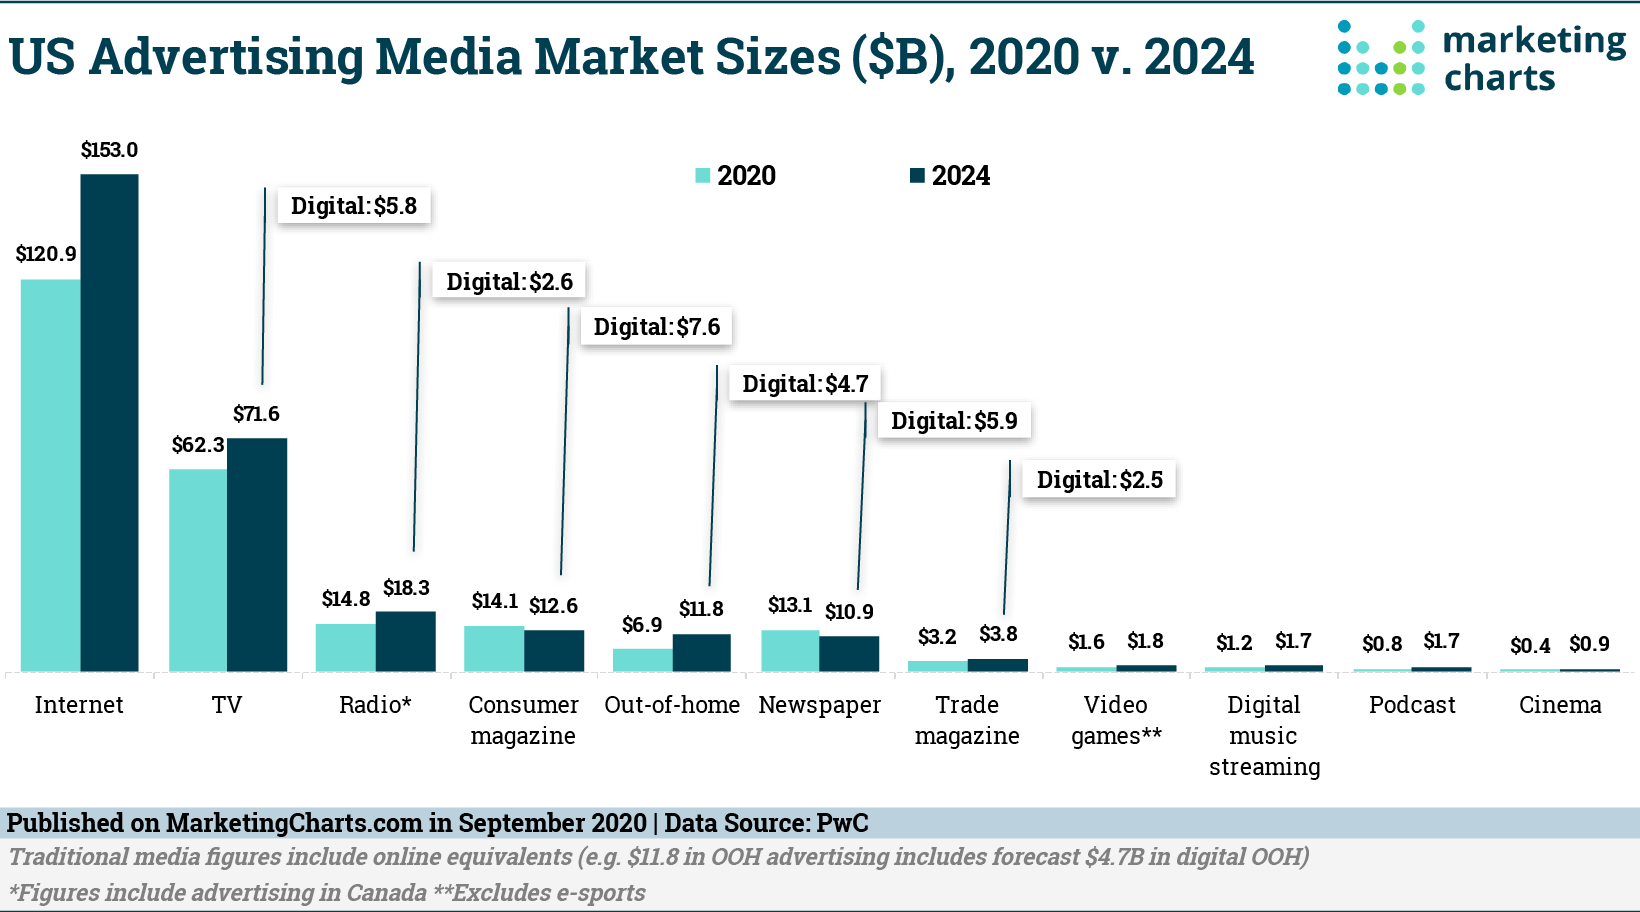 US Advertising Media Market Sizes ($B) 2020 v 2024